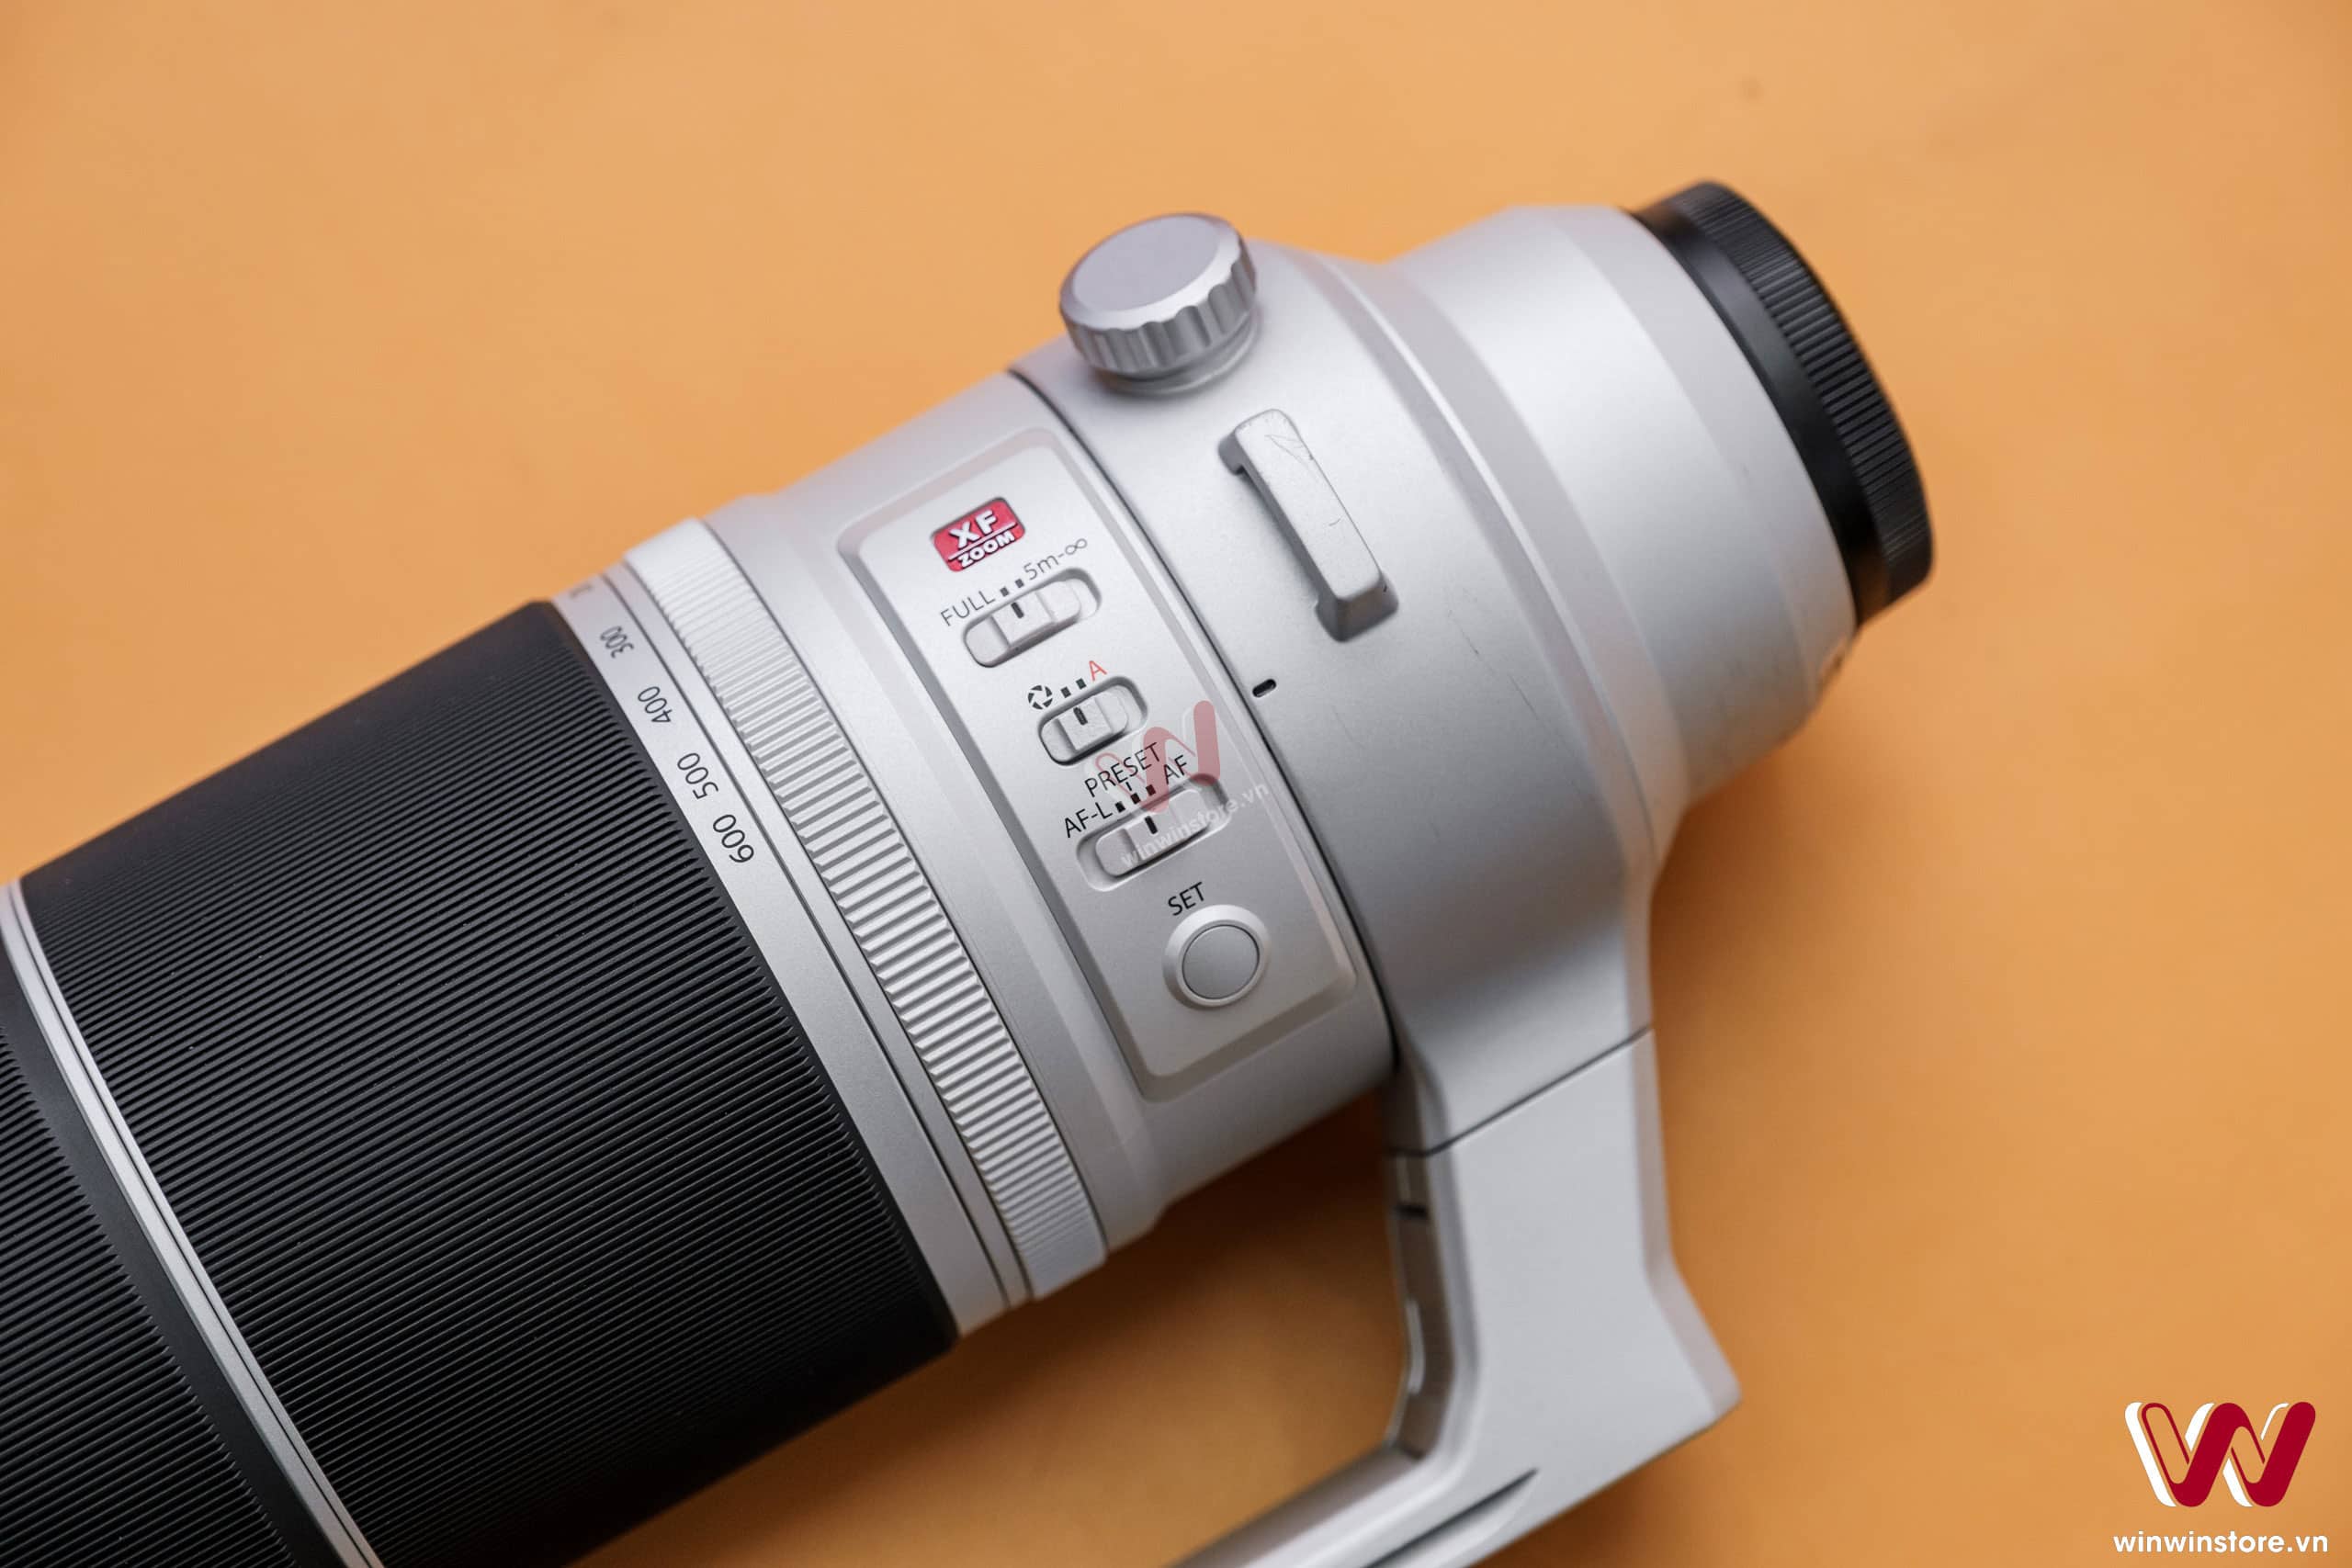 Trên tay ống kính Fujifilm XF 150-600mm F5.6-8 R LM OIS WR, ống kính siêu tele mới với kích thước và trọng lượng gọn nhẹ